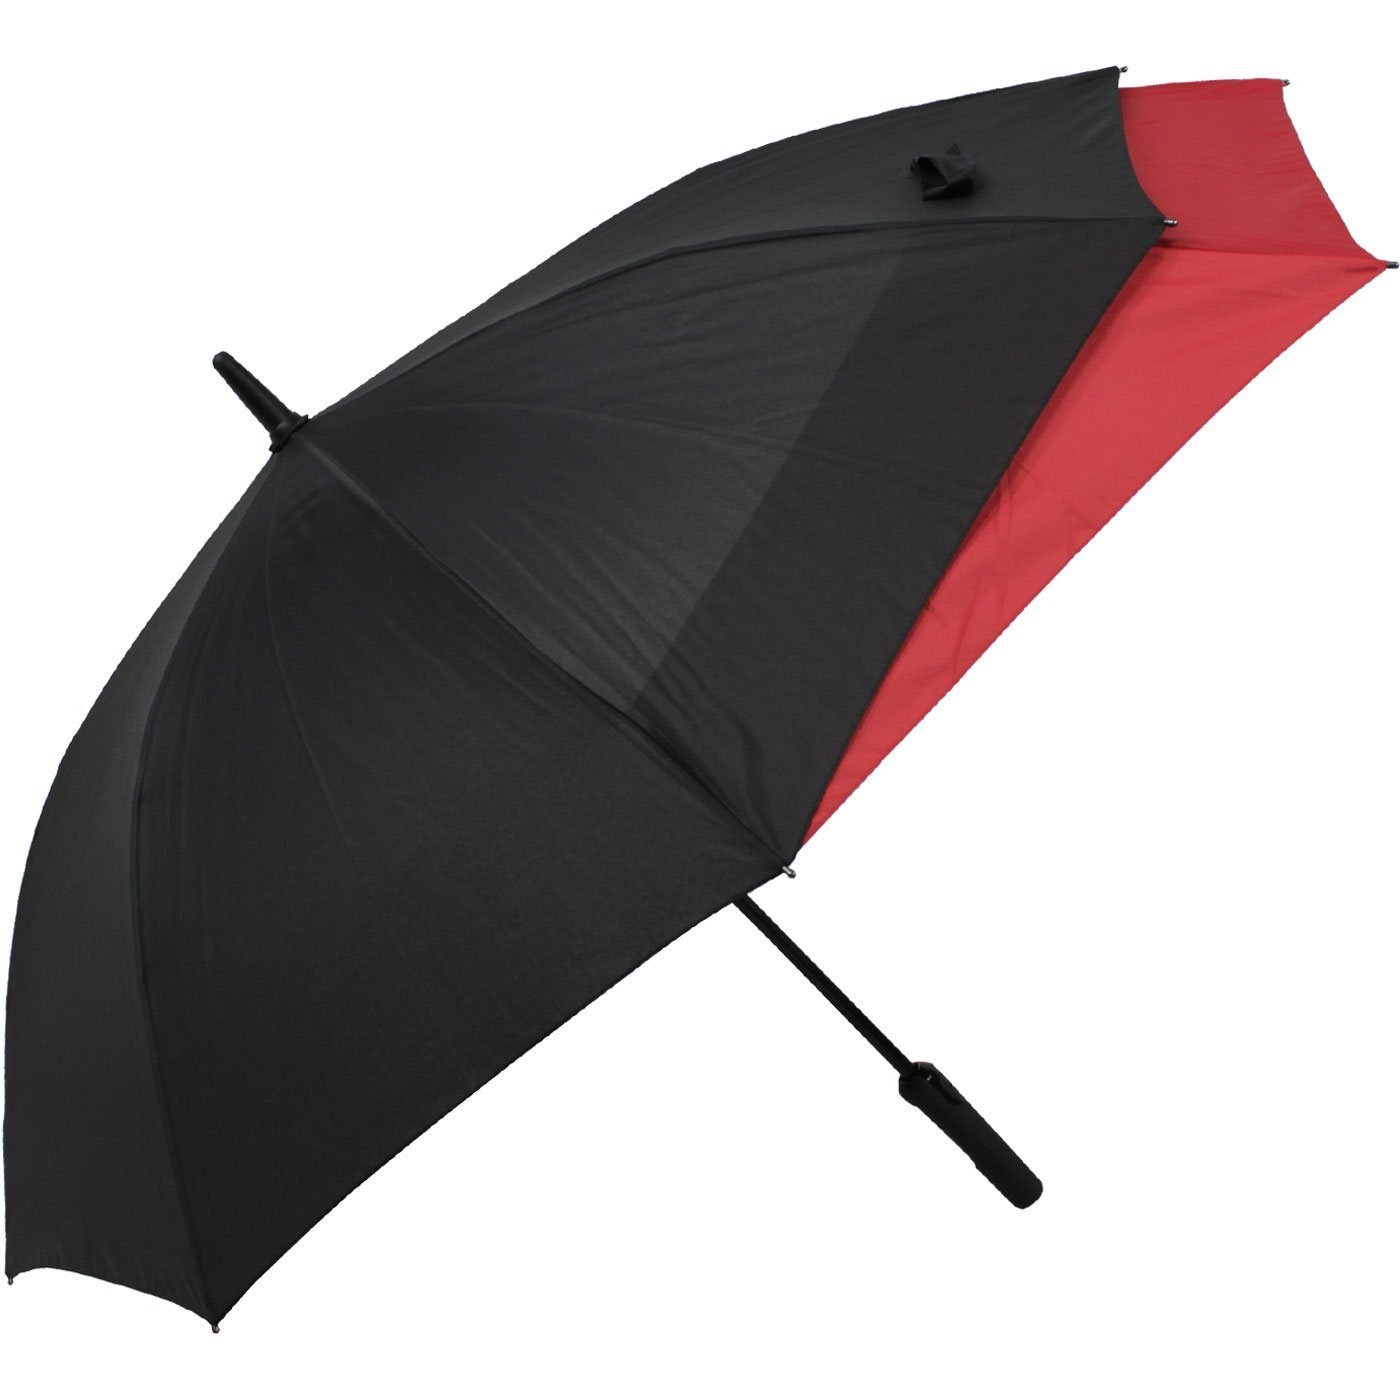 doppler® Langregenschirm schwarz-rot beim Fiberglas Öffnen Regen für XL, mit vor Auf-Automatik mehr vergrößert sich Schutz Move - to